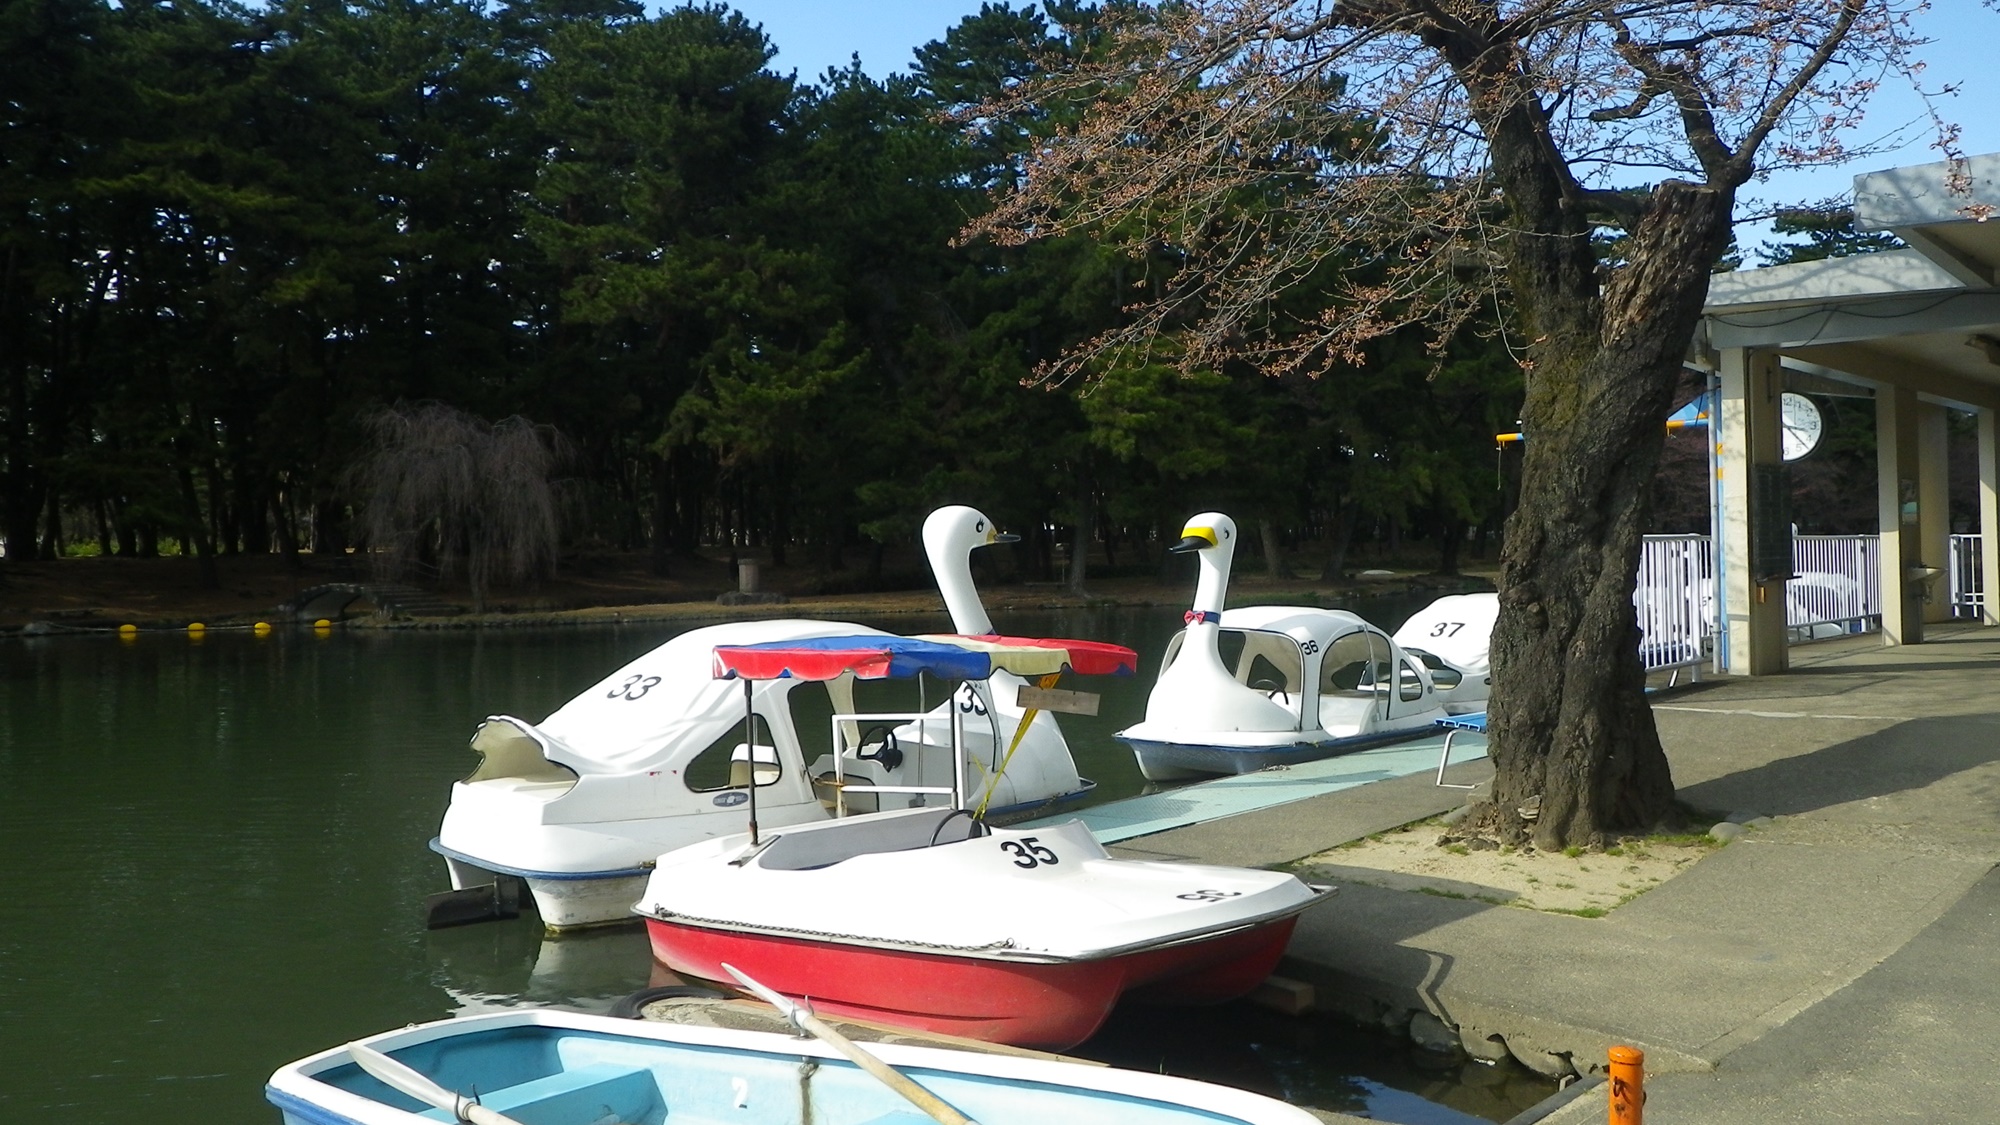 *敷島公園／緑豊かな公園ではスワンボートも楽しめる♪カップル・ファミリーにお勧め☆